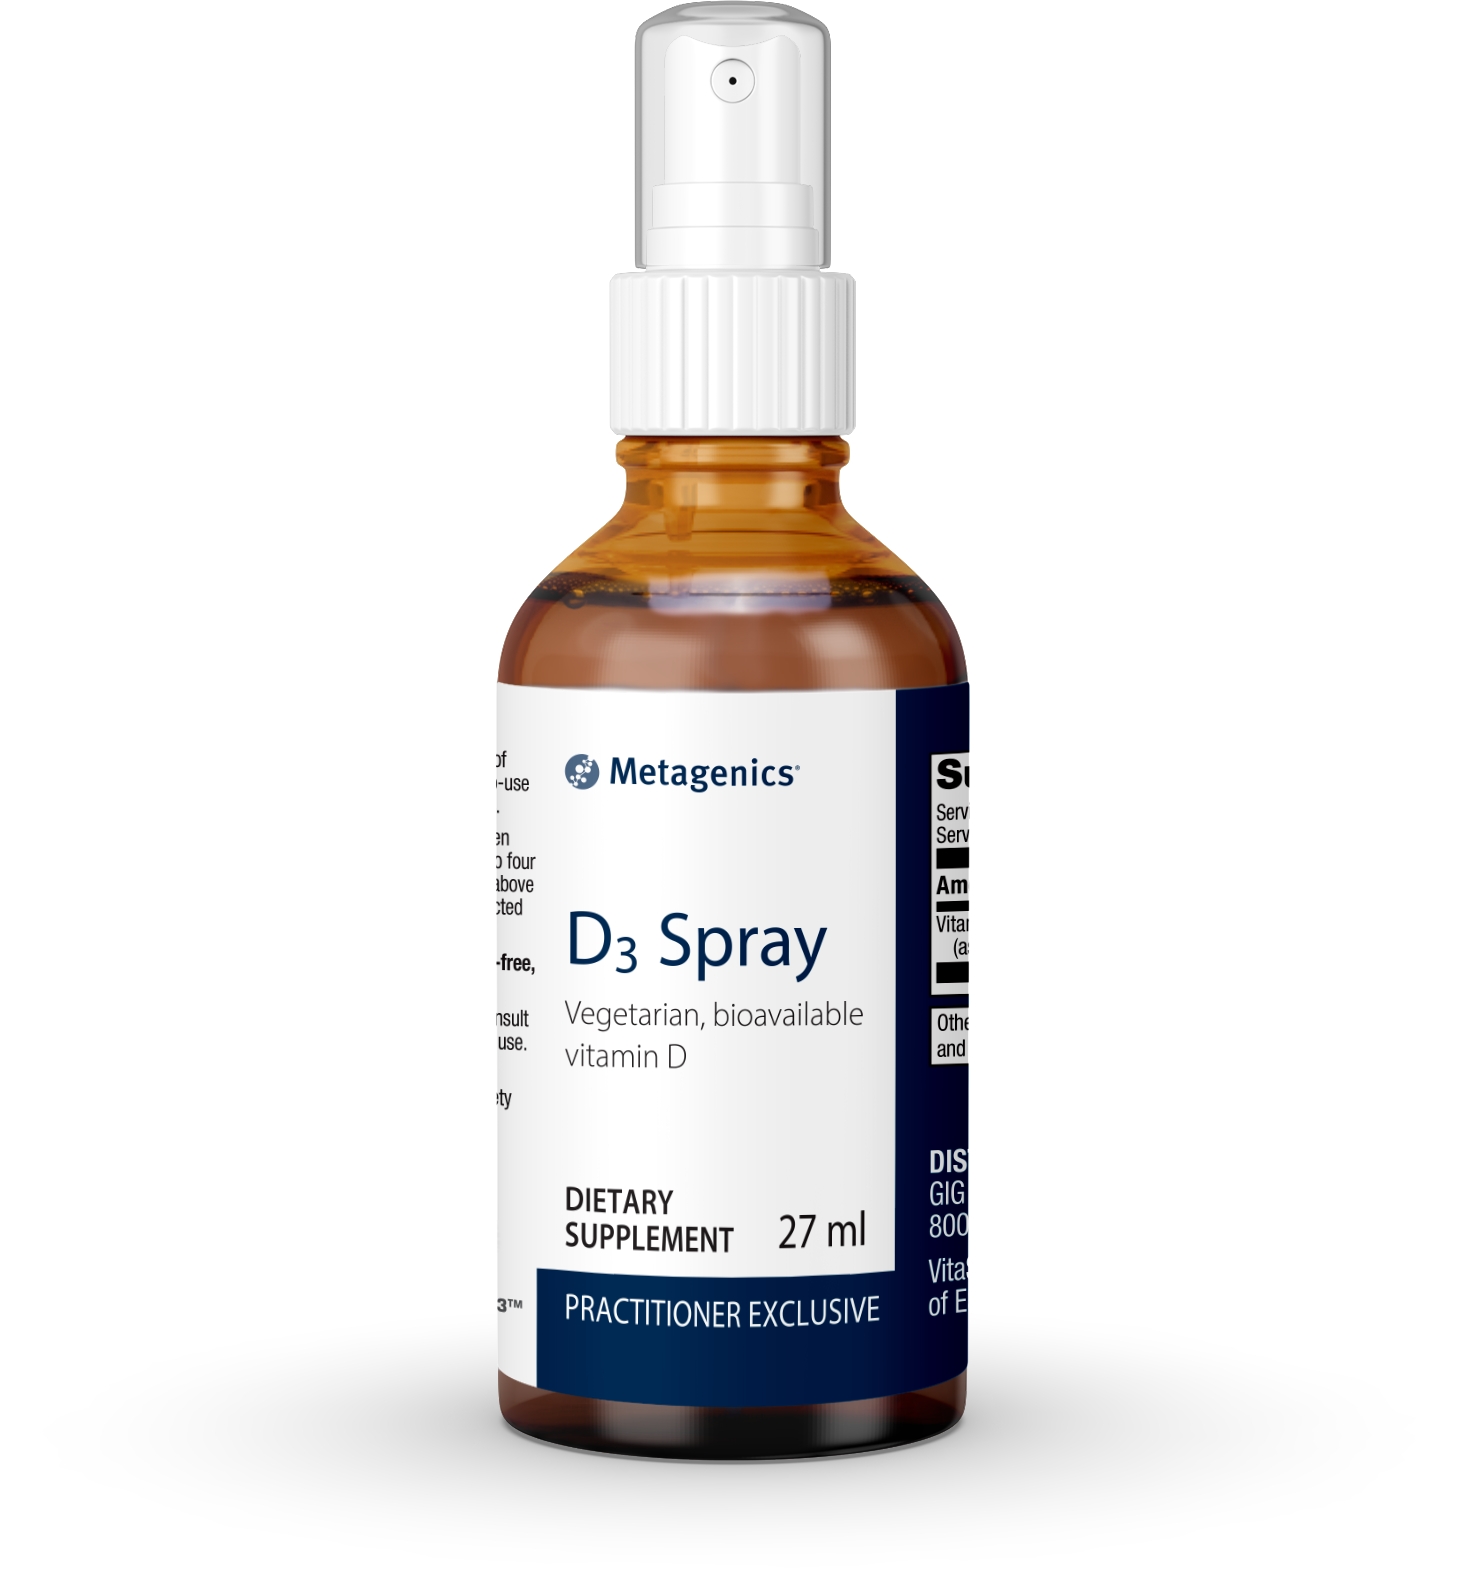 D3 Spray